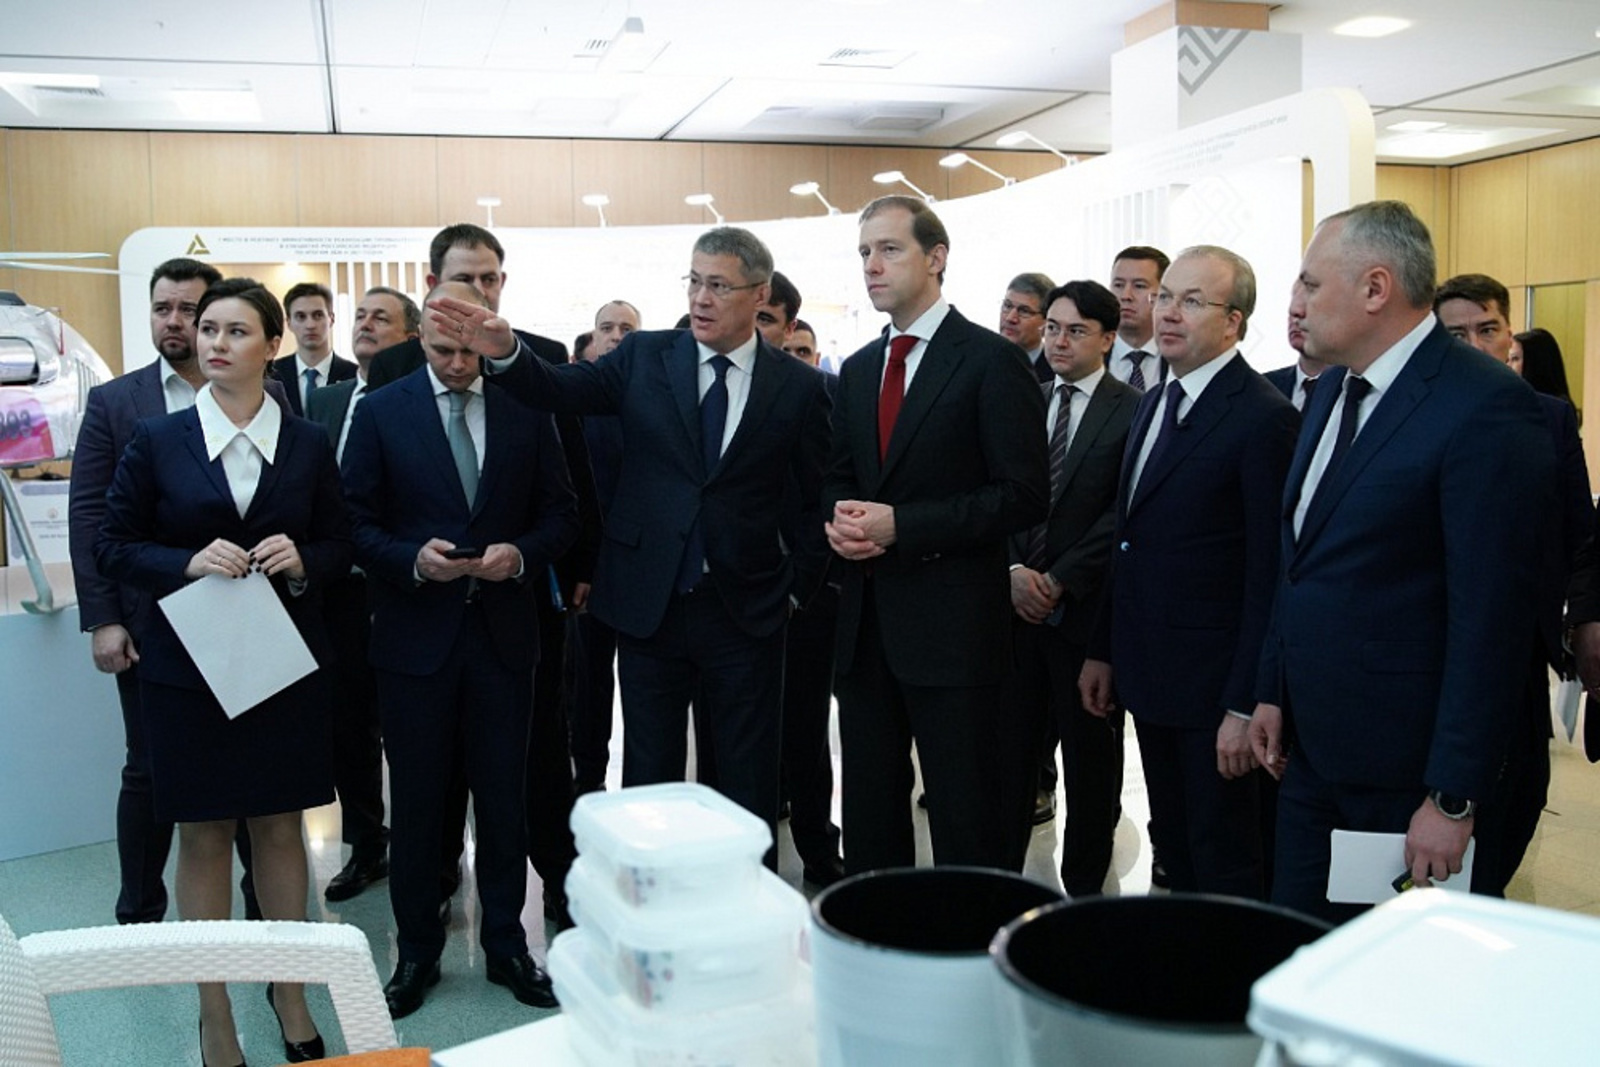 Промышленный потенциал Башкортостана  был представлен перед заседанием Координационного совета по промышленности.